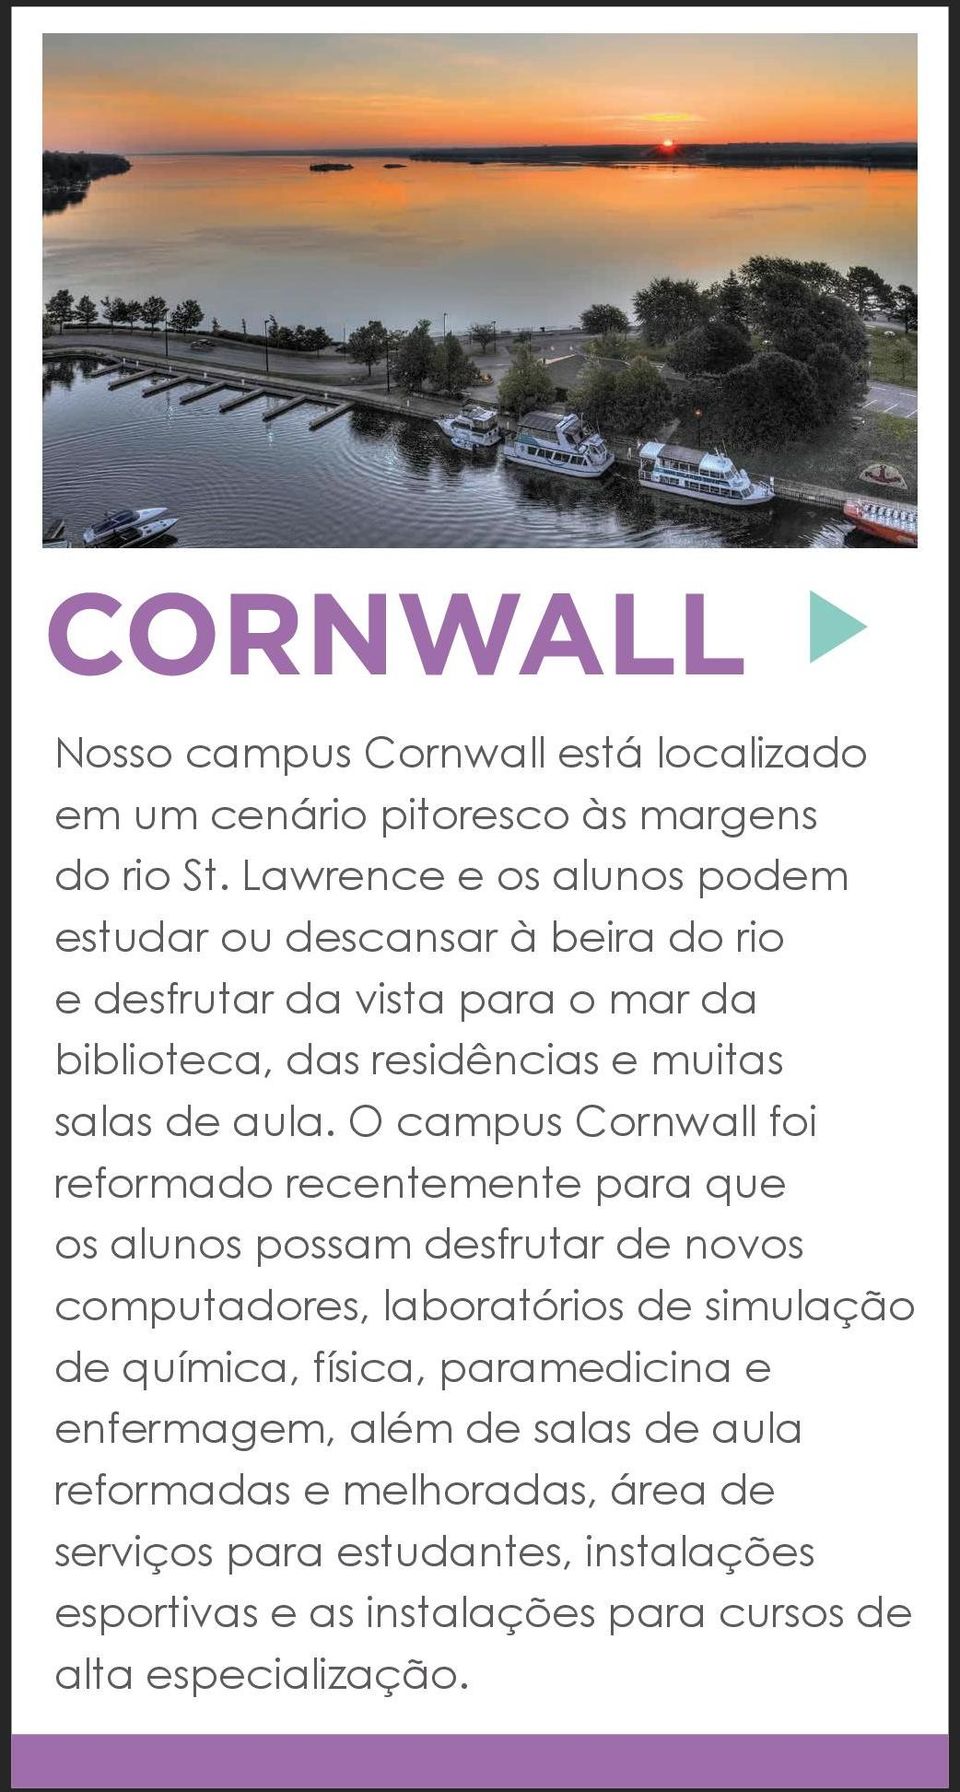 aula. O campus Cornwall foi reformado recentemente para que os alunos possam desfrutar de novos computadores, laboratórios de simulação de